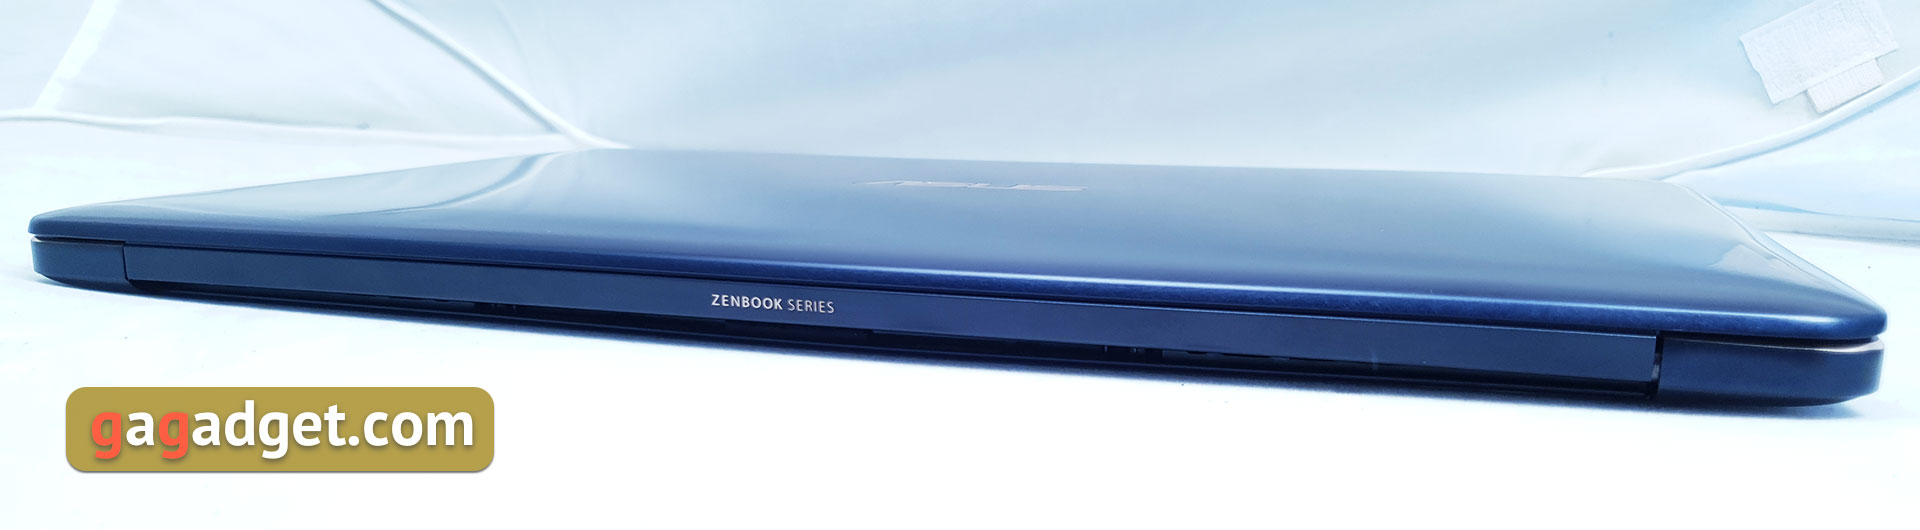 Обзор ASUS ZenBook Pro 15 UX580: новый Intel Core i9 и сенсорный экран вместо тачпада-11